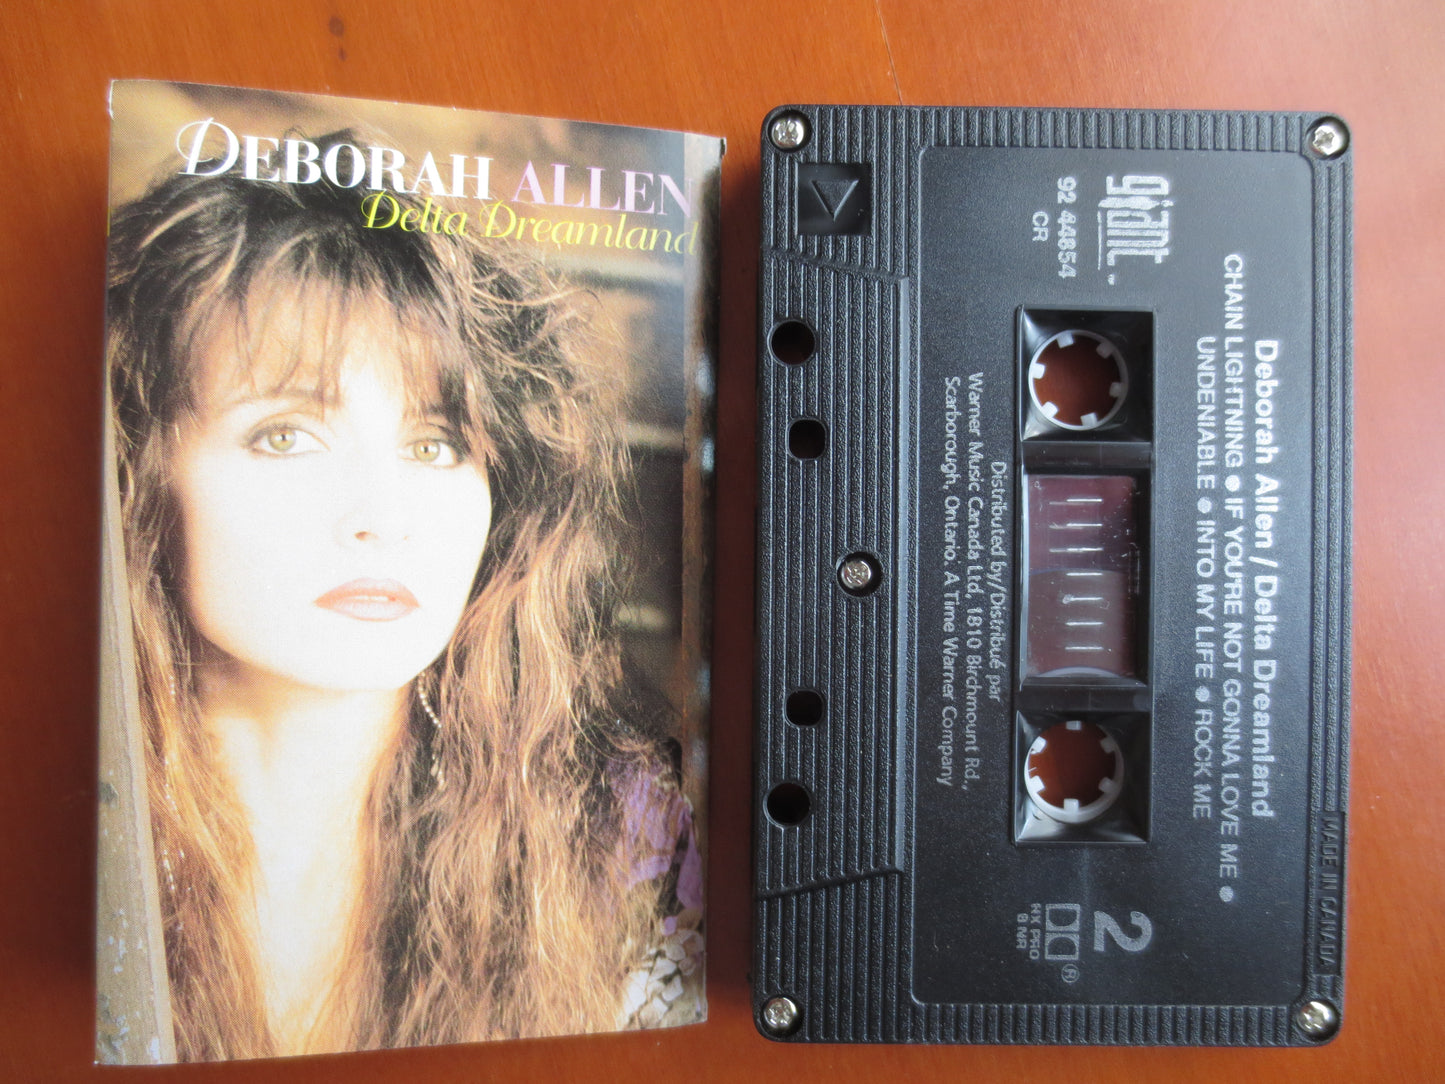 DEBORAH ALLEN Tape, Delta DREAMLAND, Deborah Allen  Album, Deborah Allen Music, Tape Cassette, Cassette, 1993 Cassette